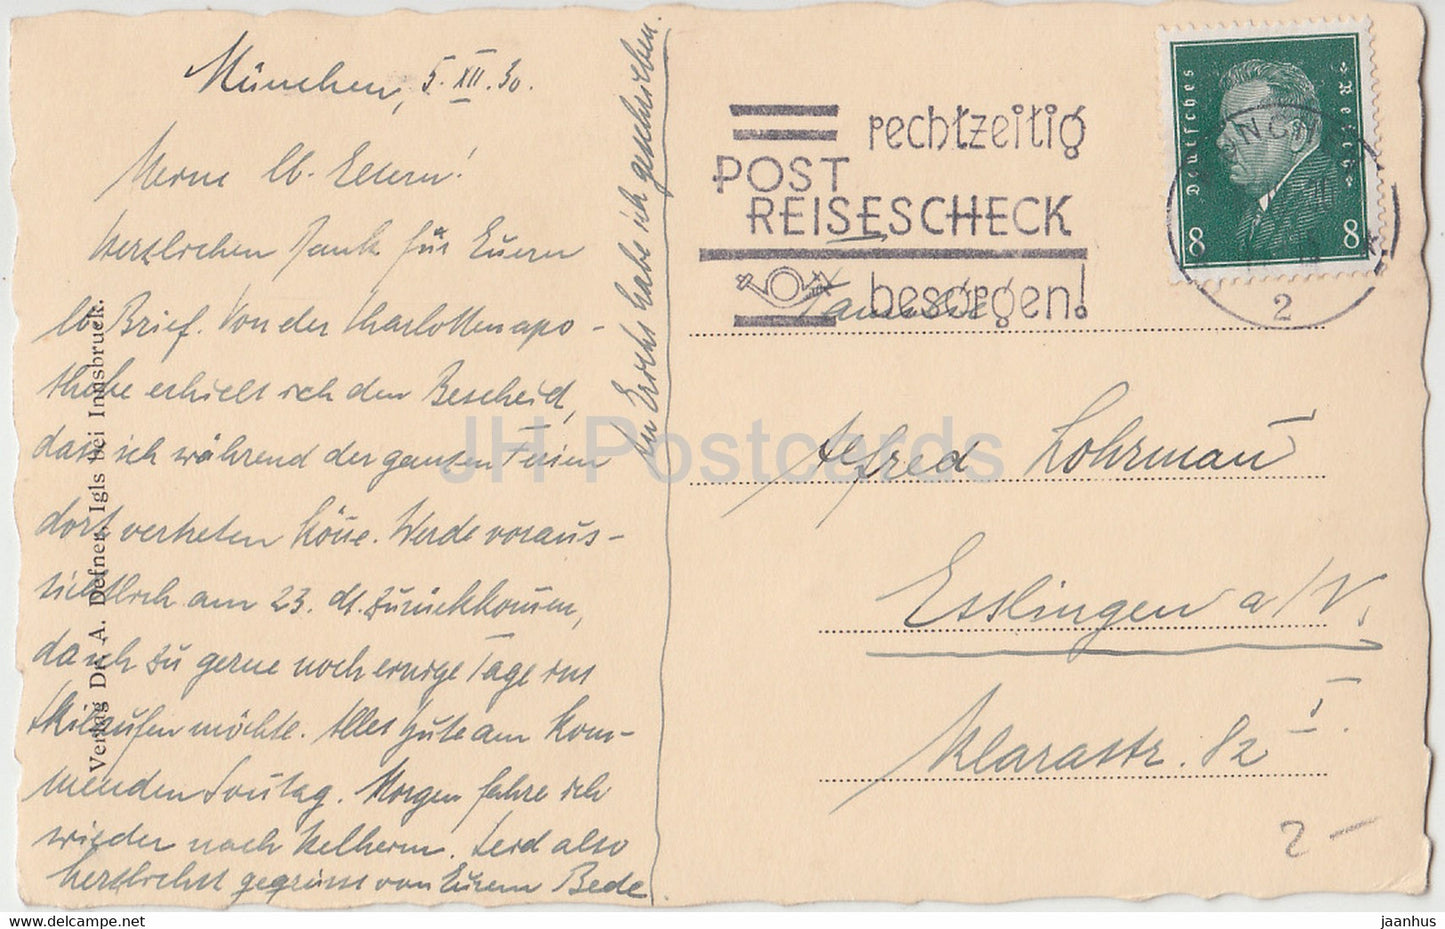 crocus blanc - fleurs - A. Defner - carte postale ancienne - 1930 - Autriche - utilisé